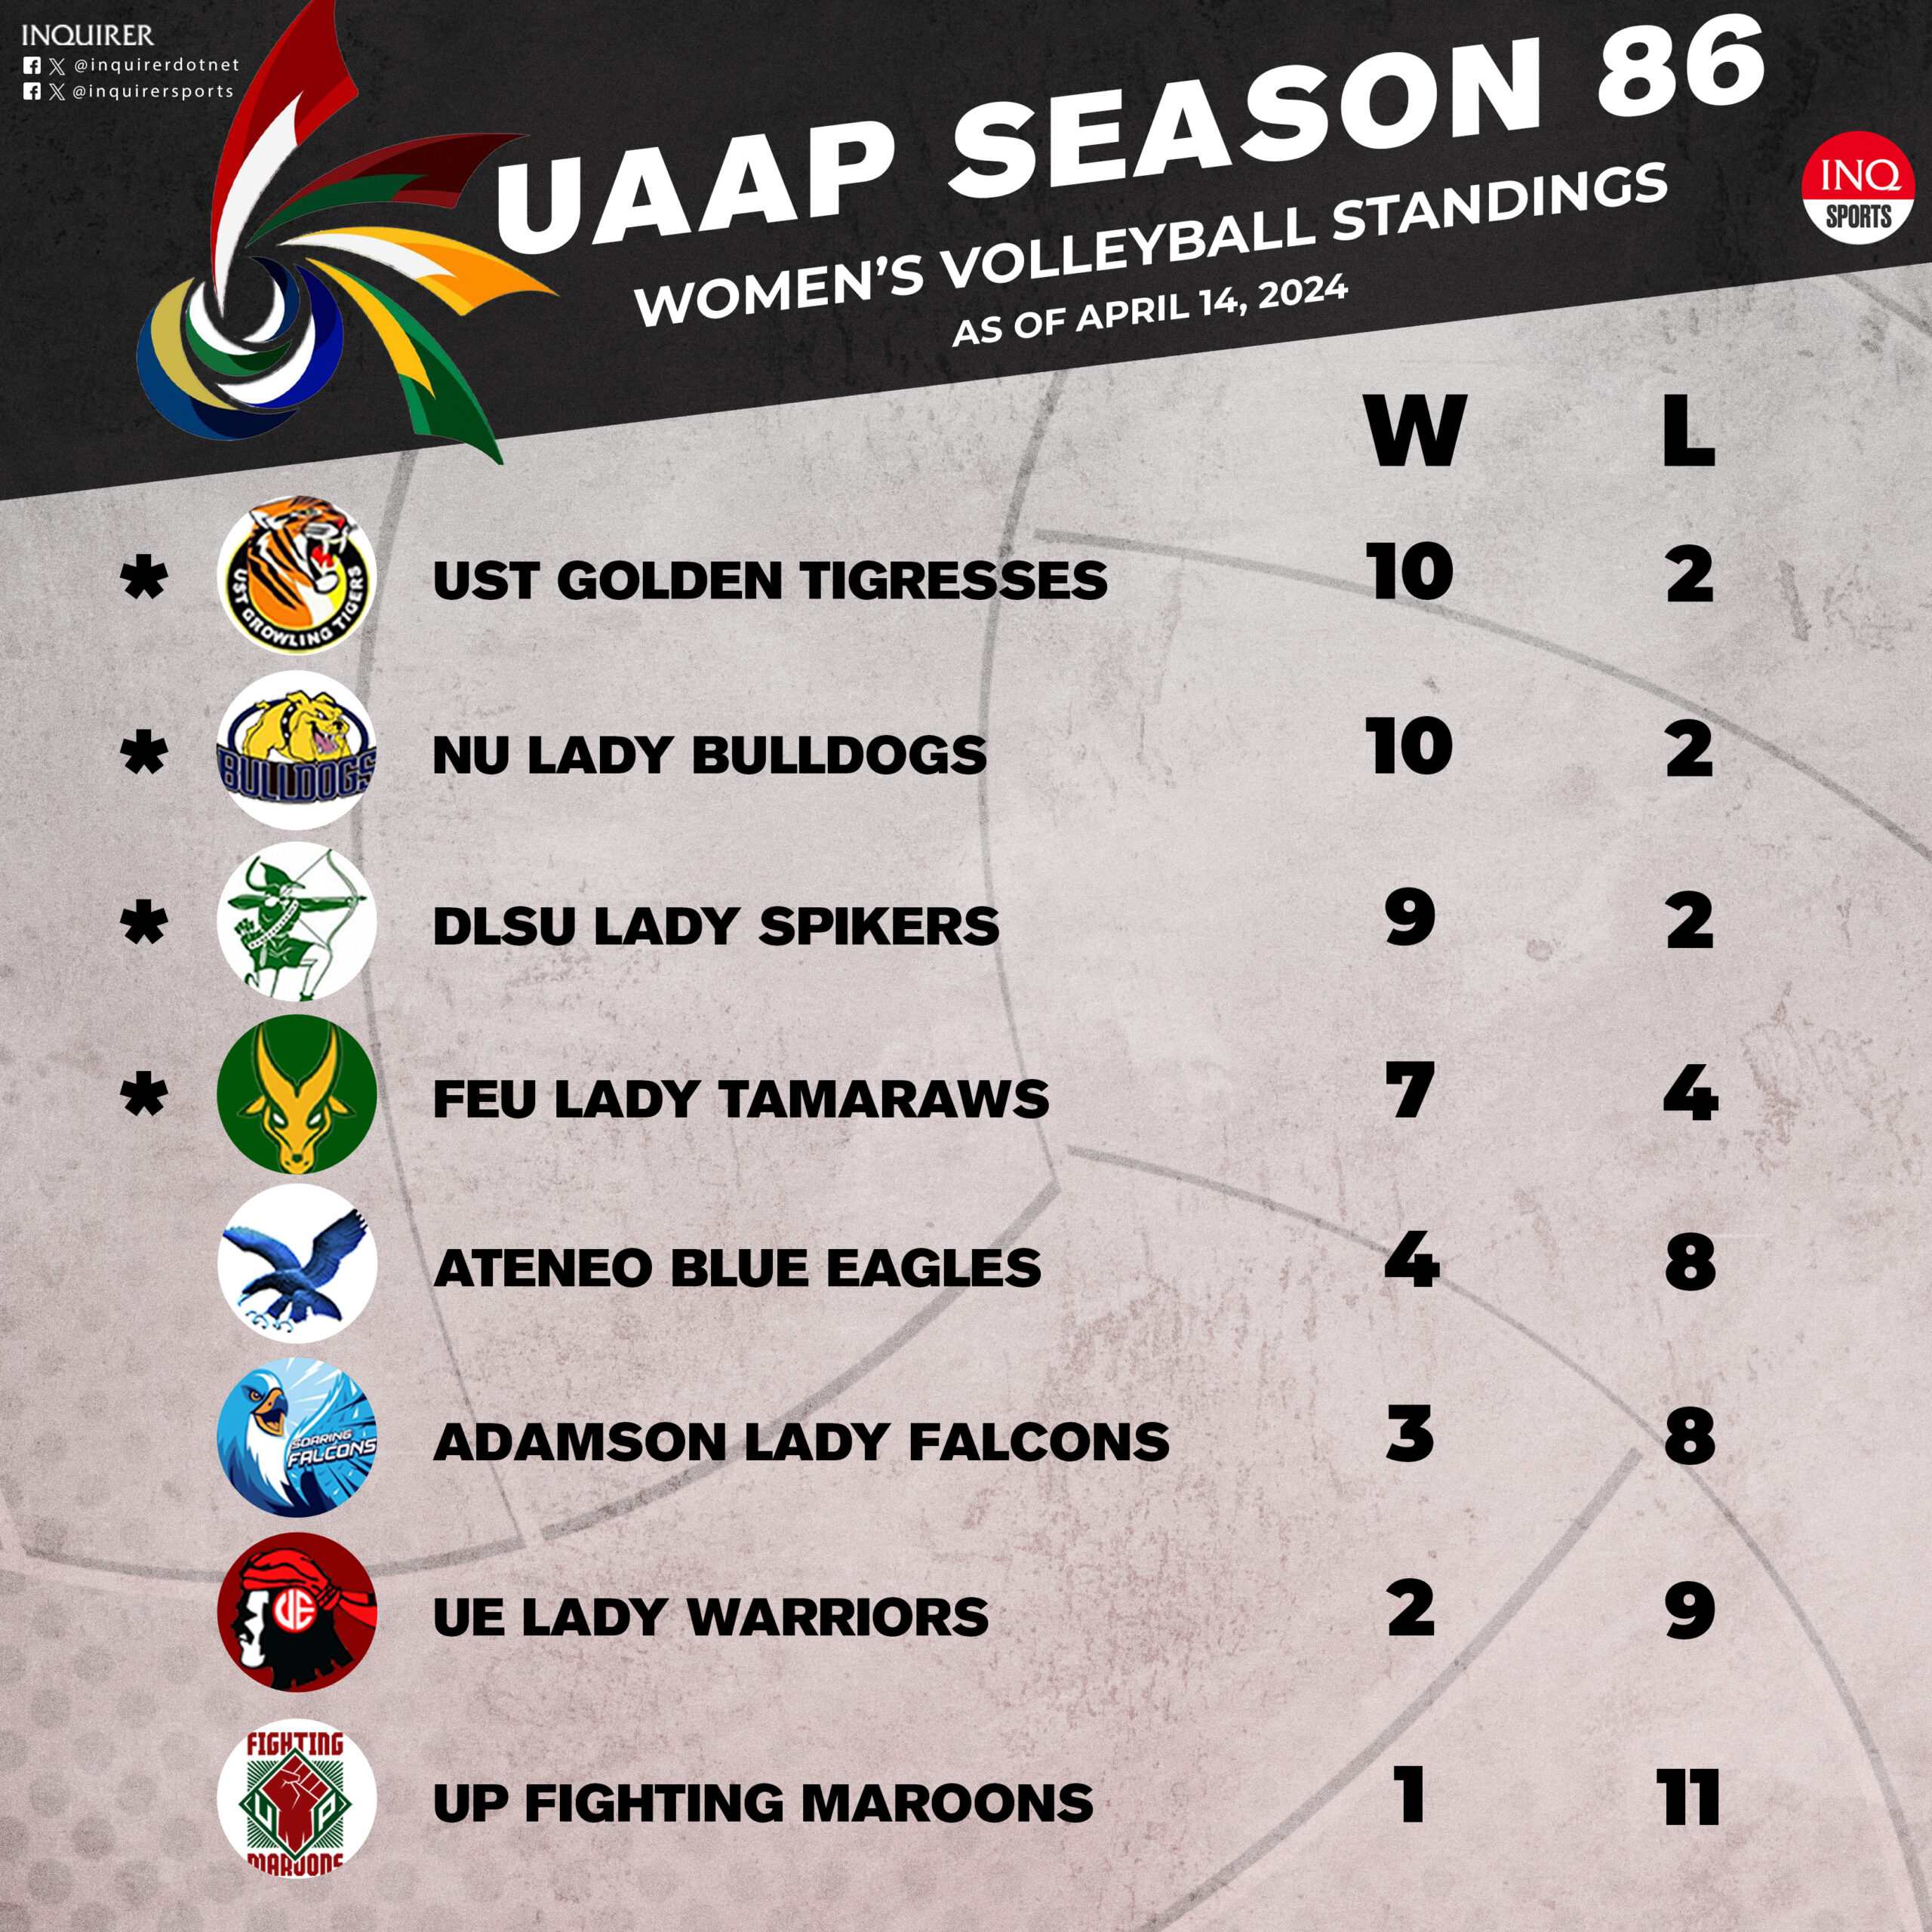 UAAP Season 86 women's volleyball standings